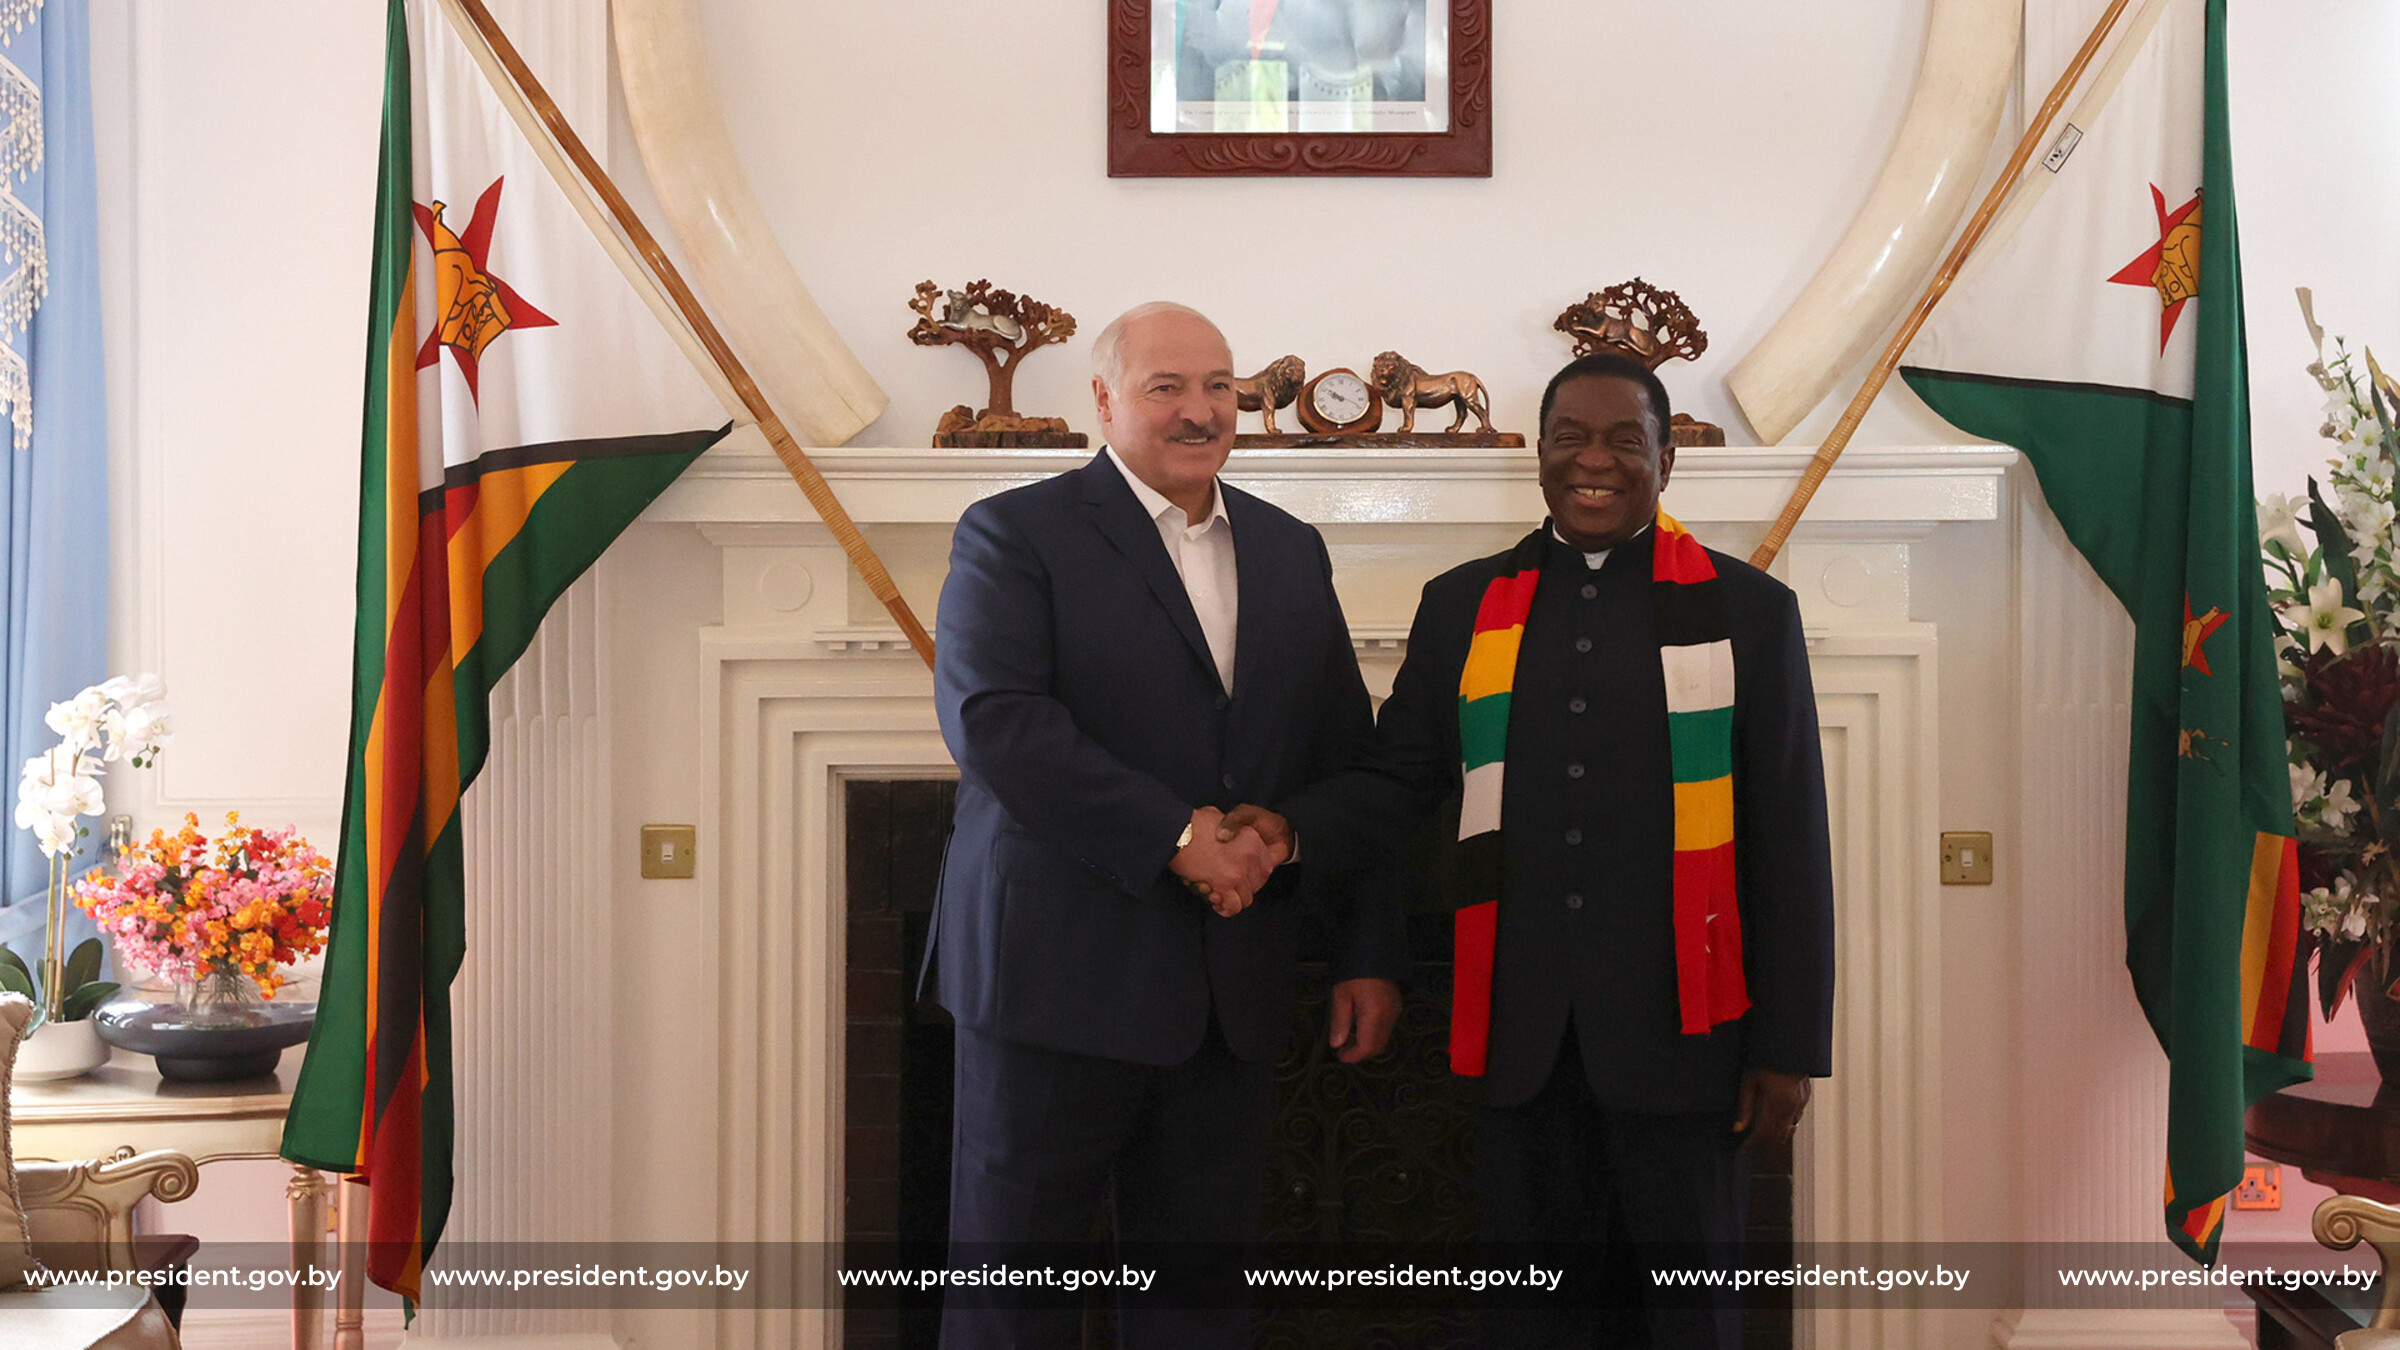 President Lukashenko Makes His First Sub-Saharan Visit in Zimbabwe